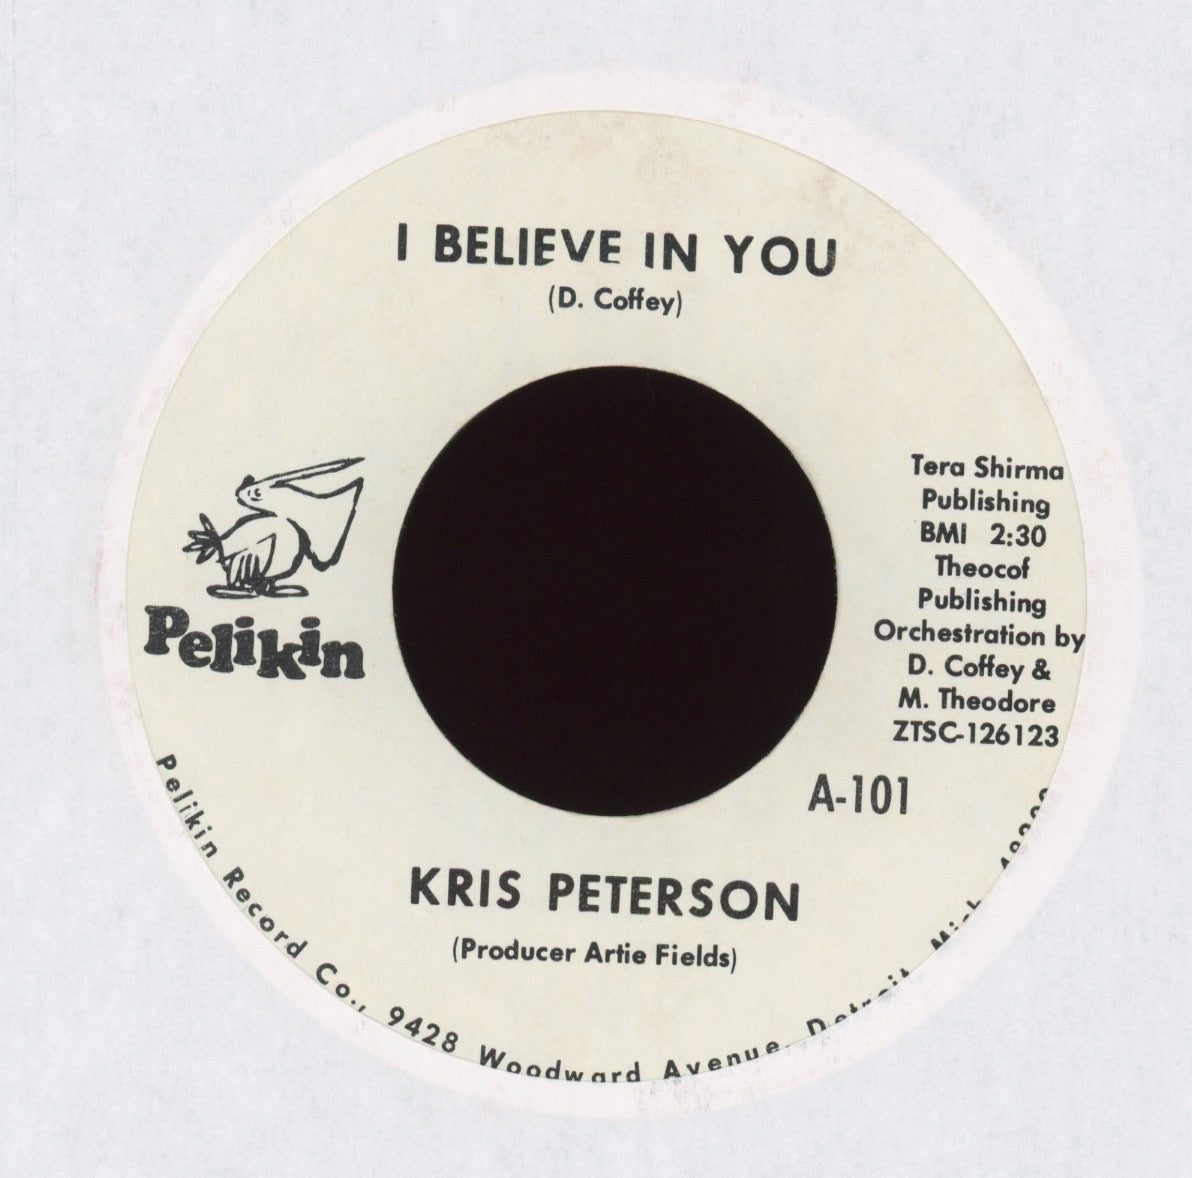 Kris Peterson - I Believe In You on Pelikin